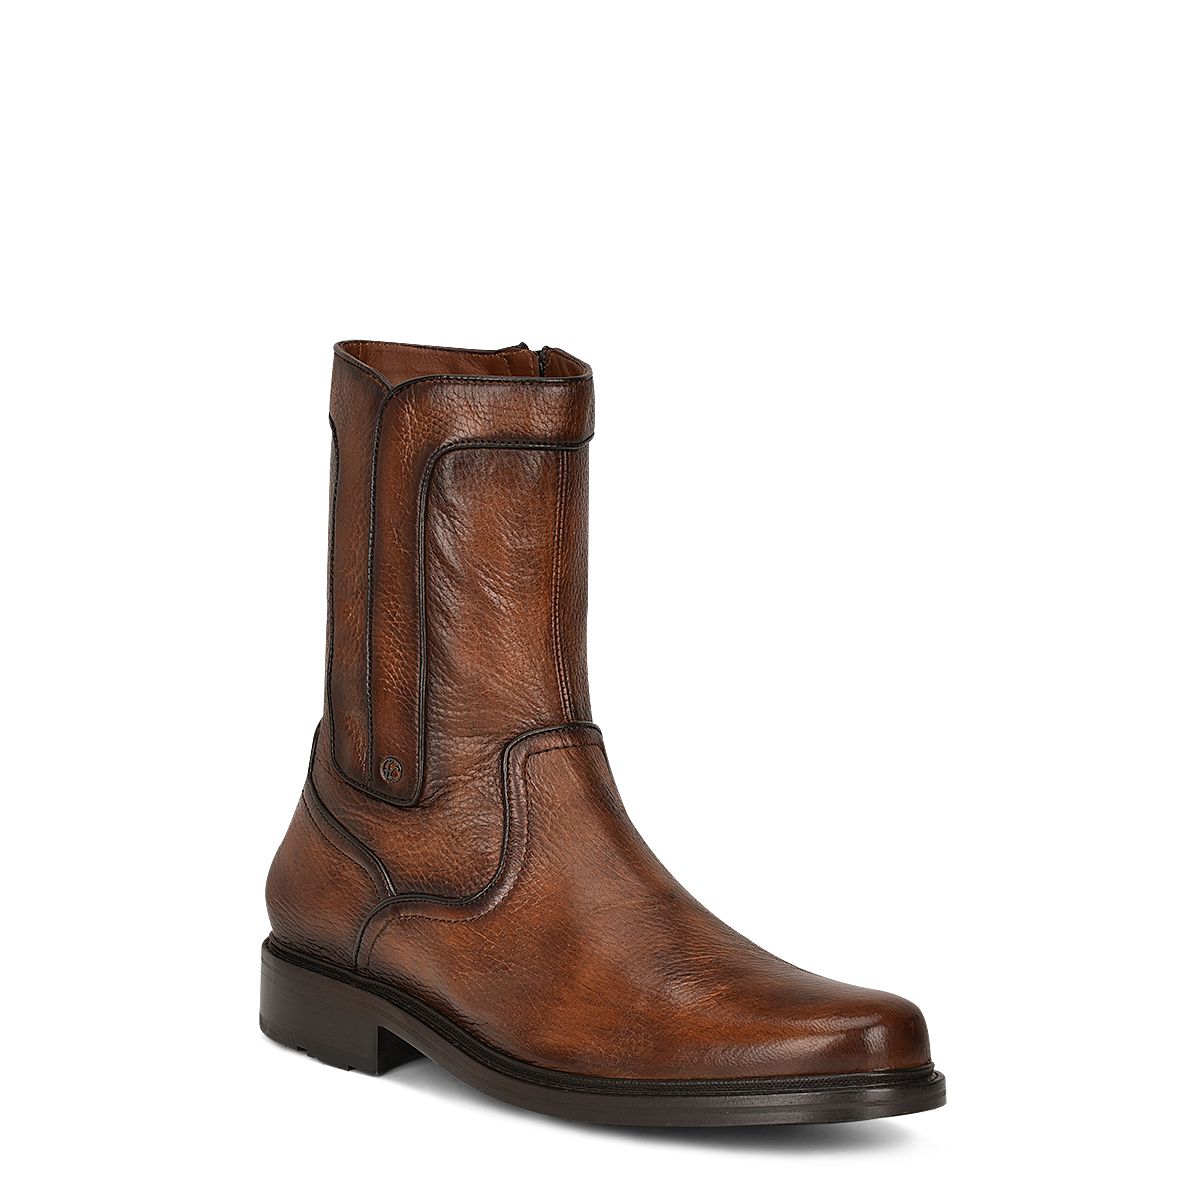 G93VNVN - Franco Cuadra brown dress casual deer leather ankle boots for men-Kuet.us